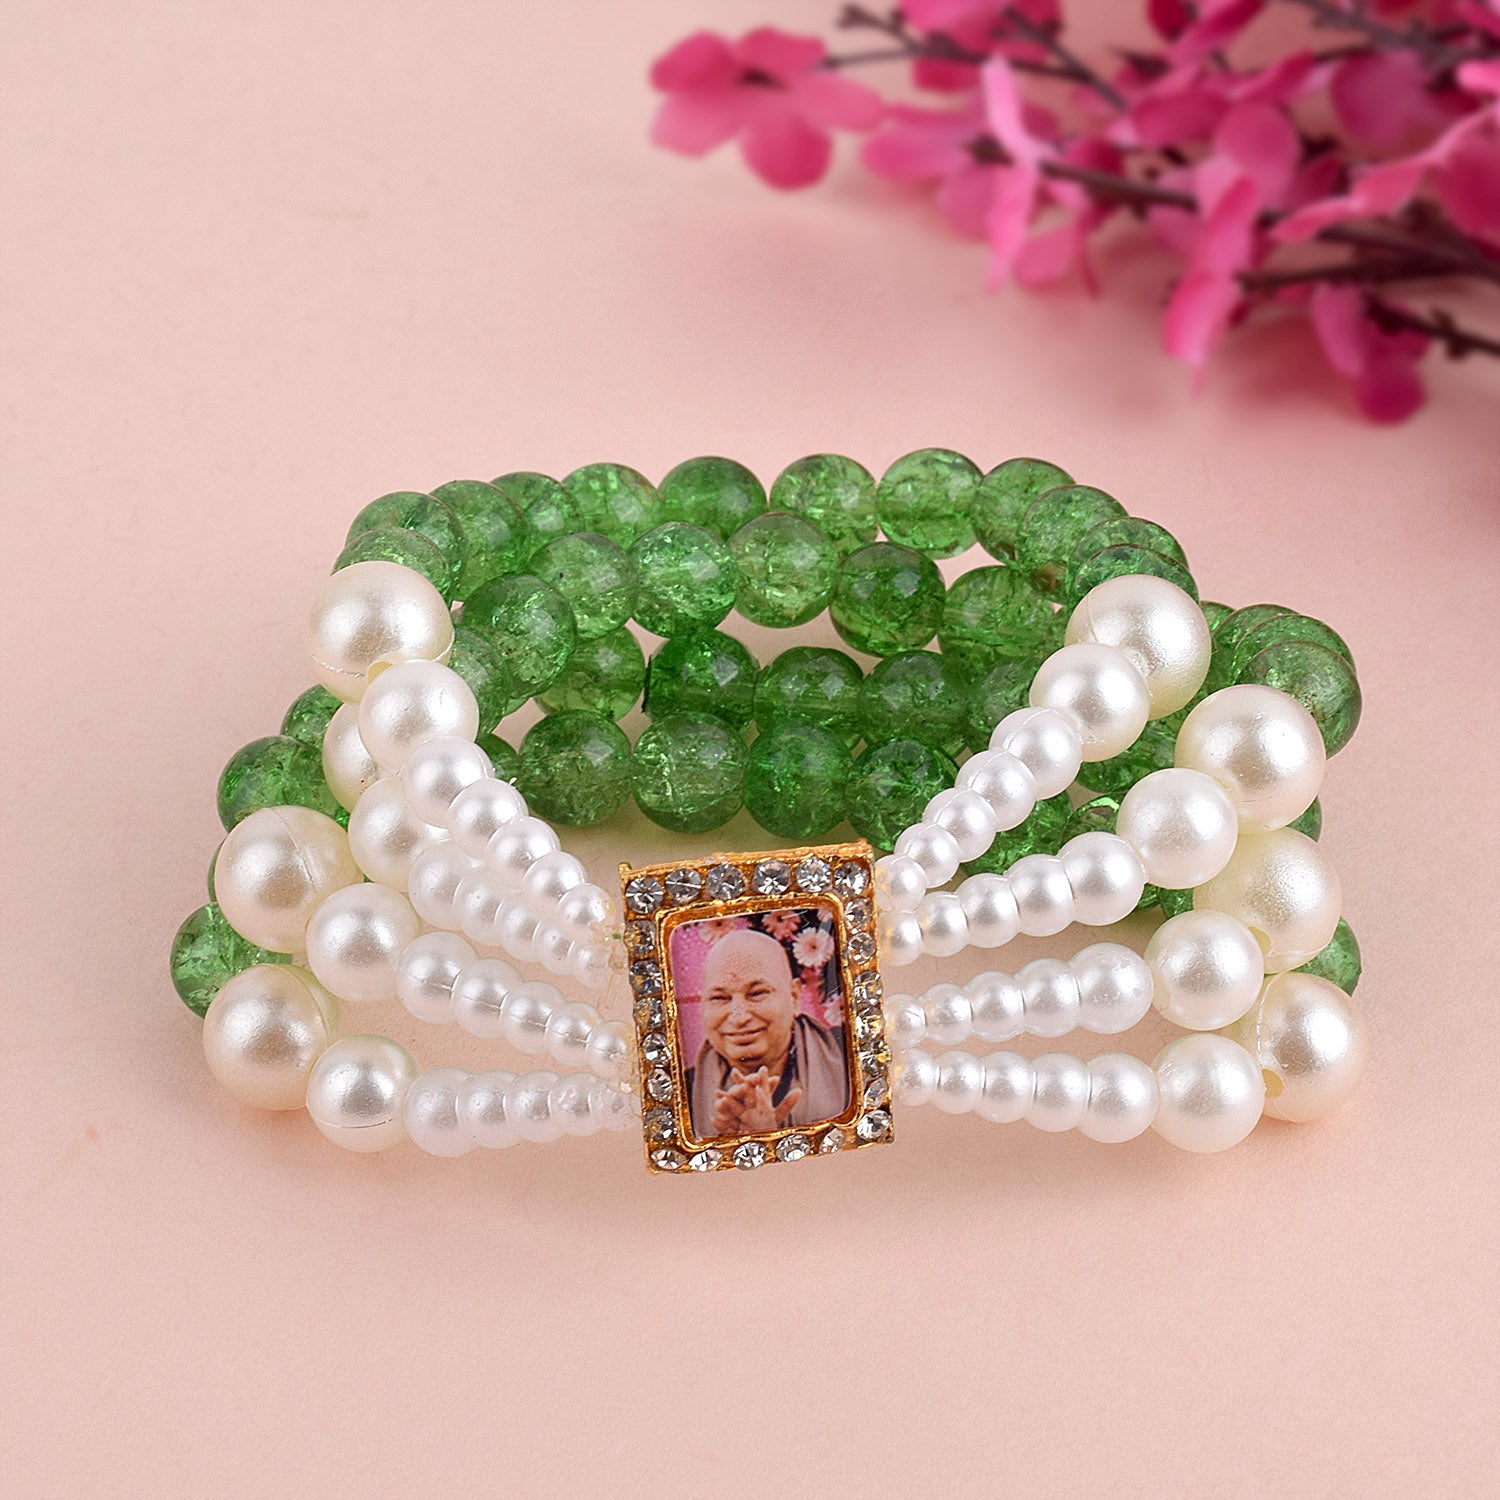 Handmade Bracelet - Clay Bead Bracelet - Green And White | eBay